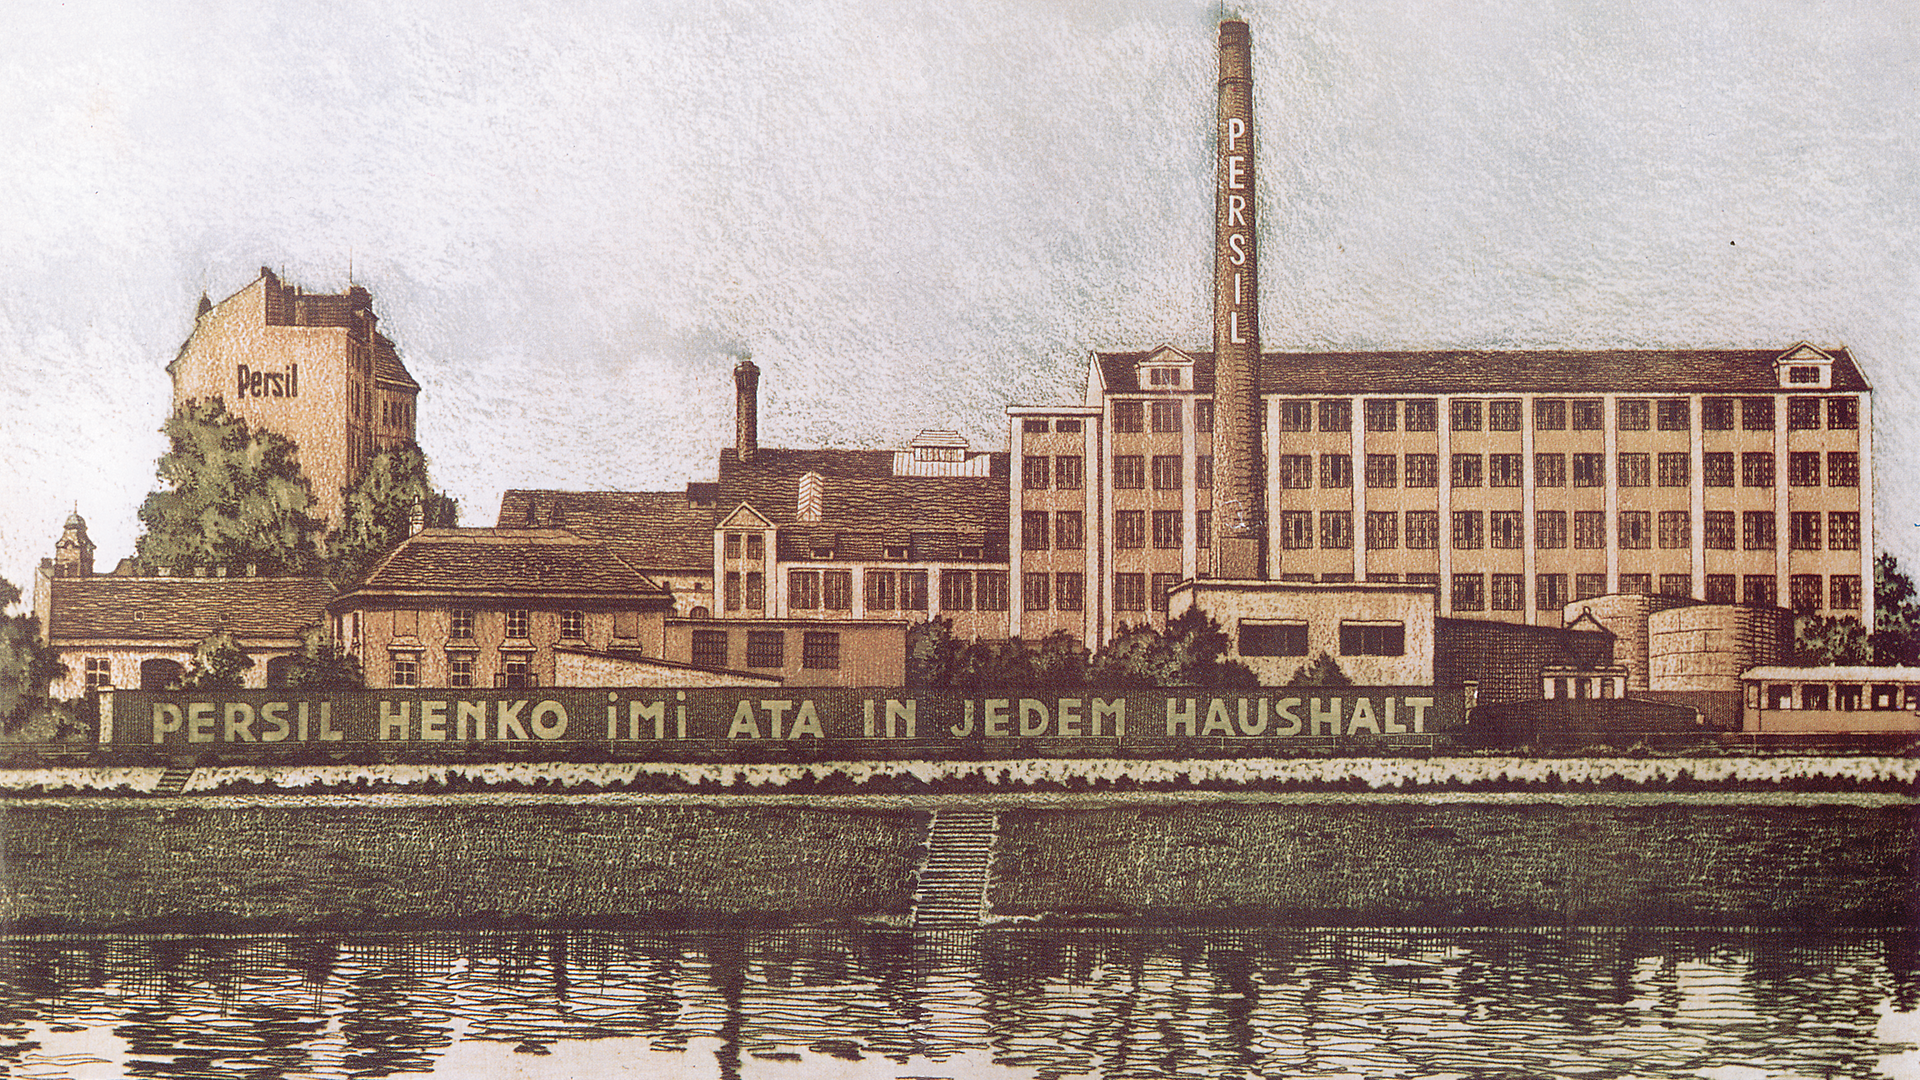 Das Henkel-Werk Wien im Jahr 1934 nach einer farbigen Originalradierung von Erich Veit.